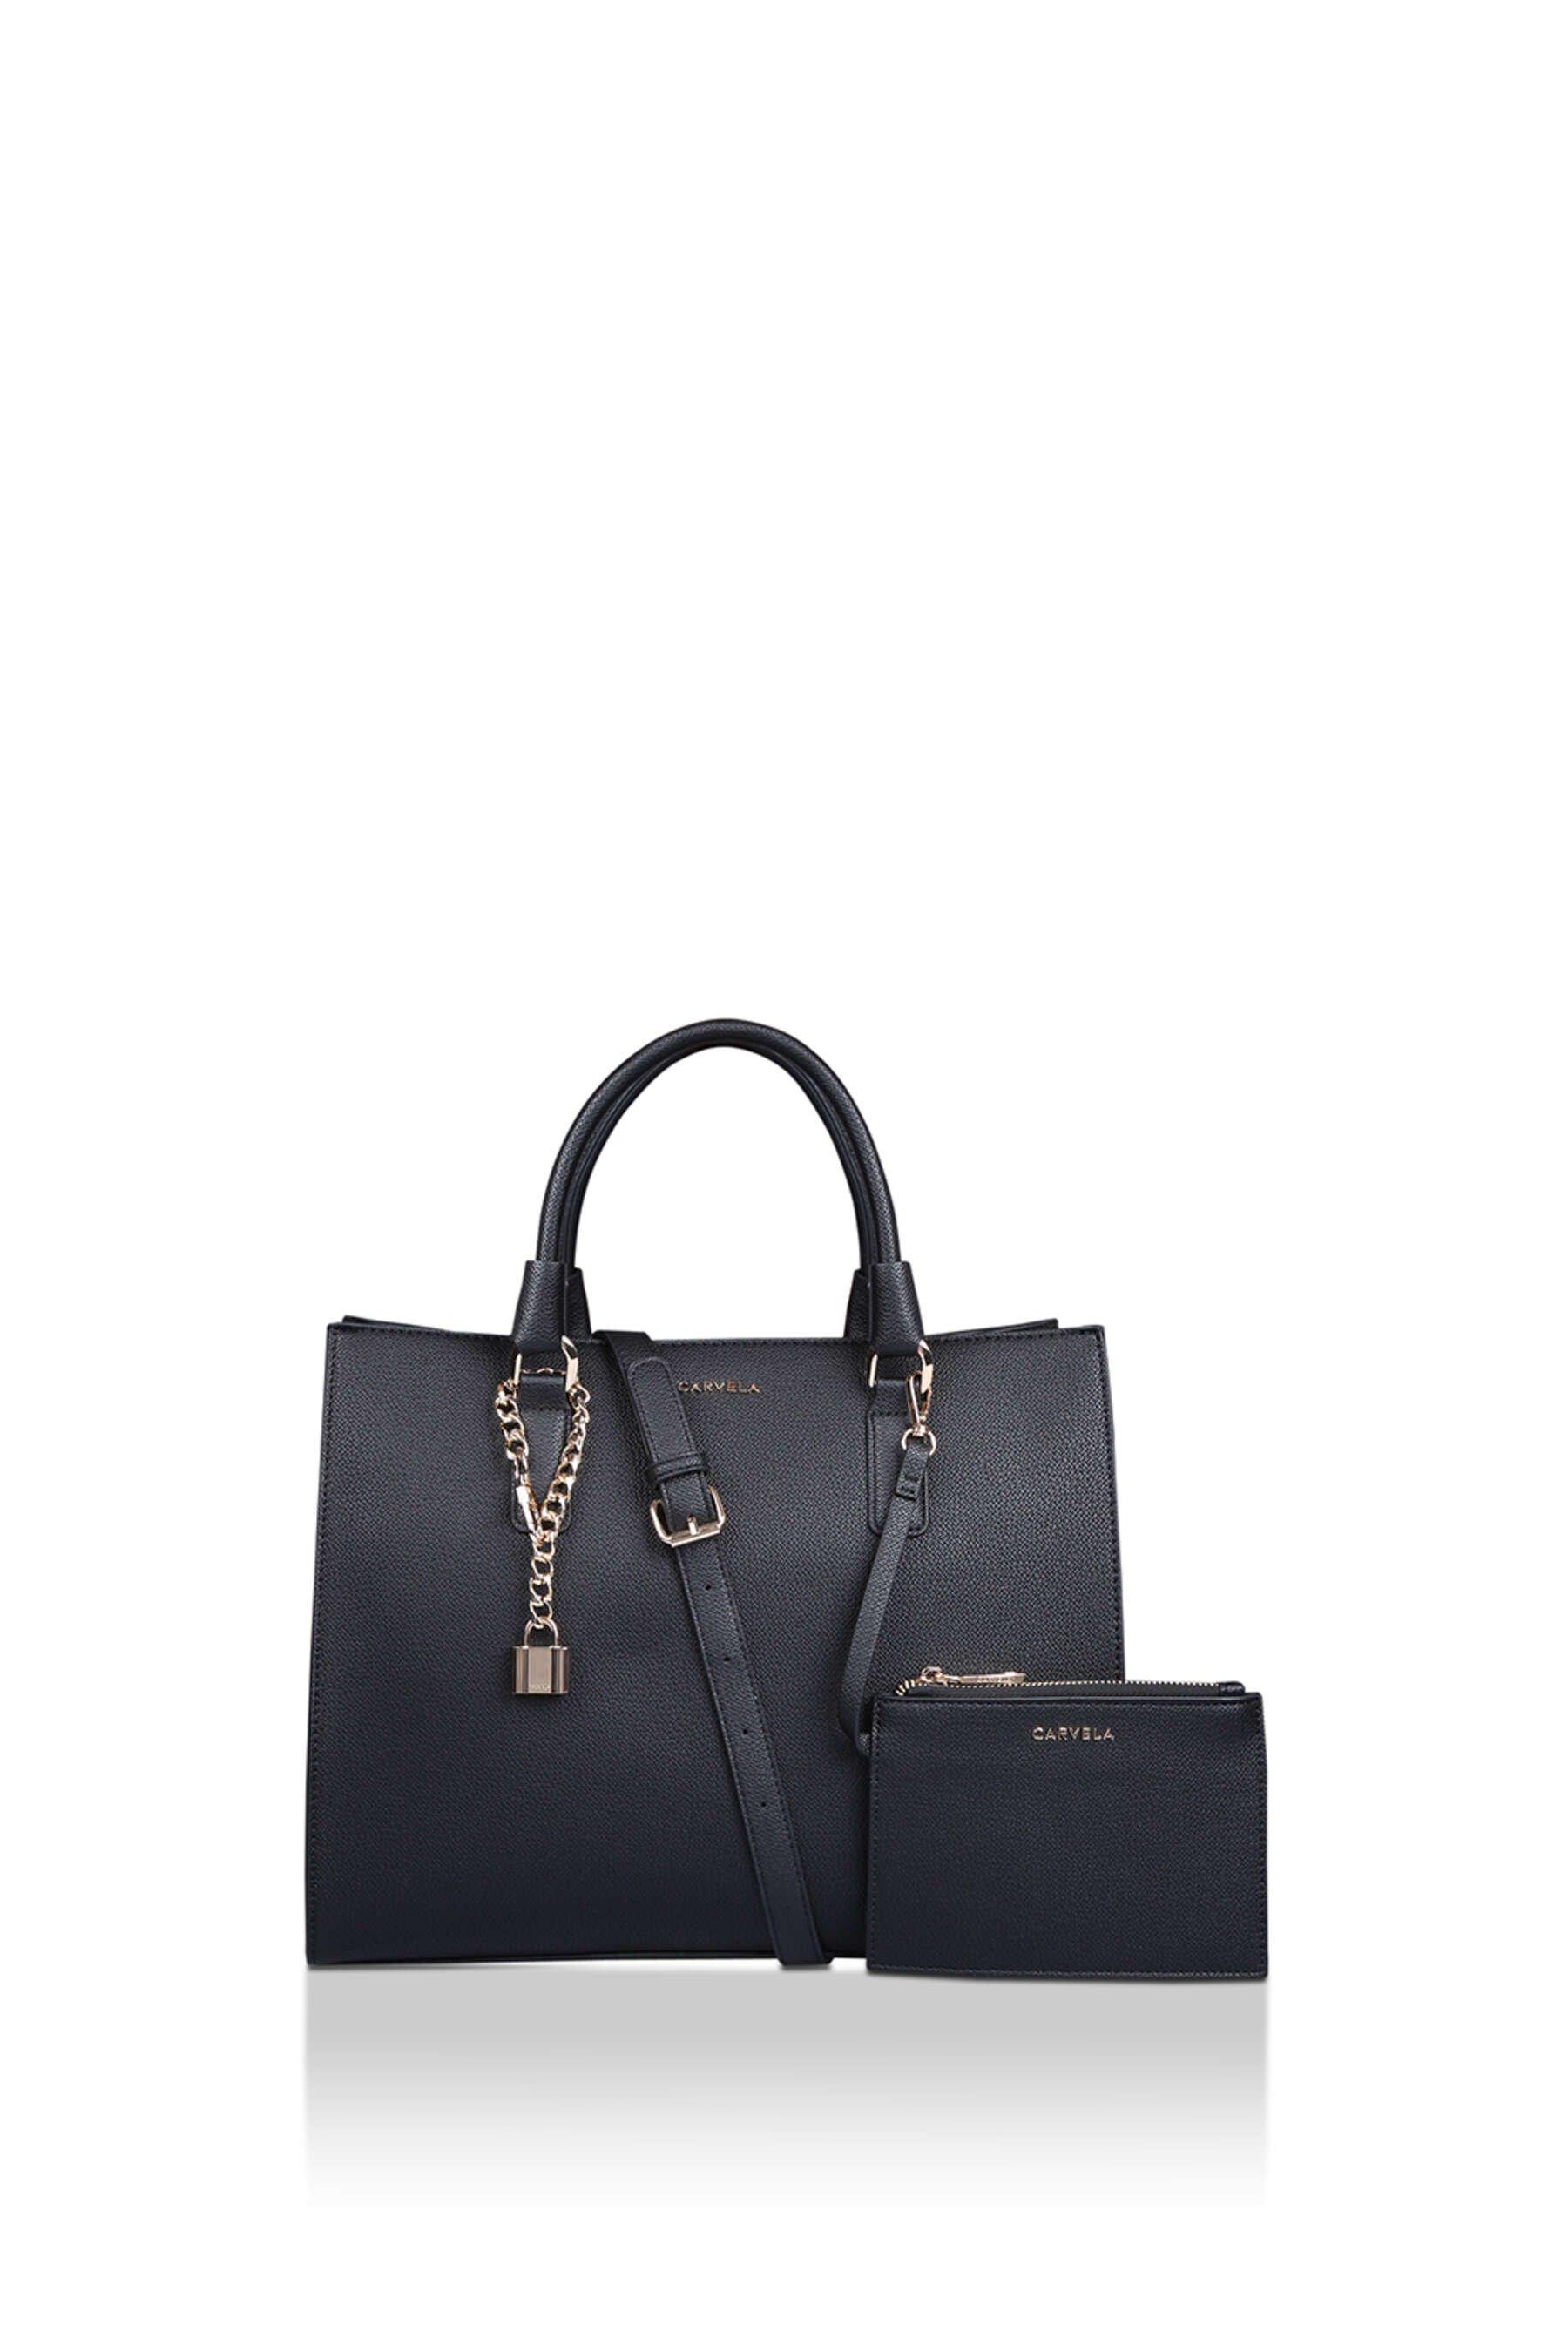 Debenhams Vintage Inspired Black Glomesh Shoulder Bag Gold Tone Strap & Zip  Tassel | Vintage Handbags shoes clothing